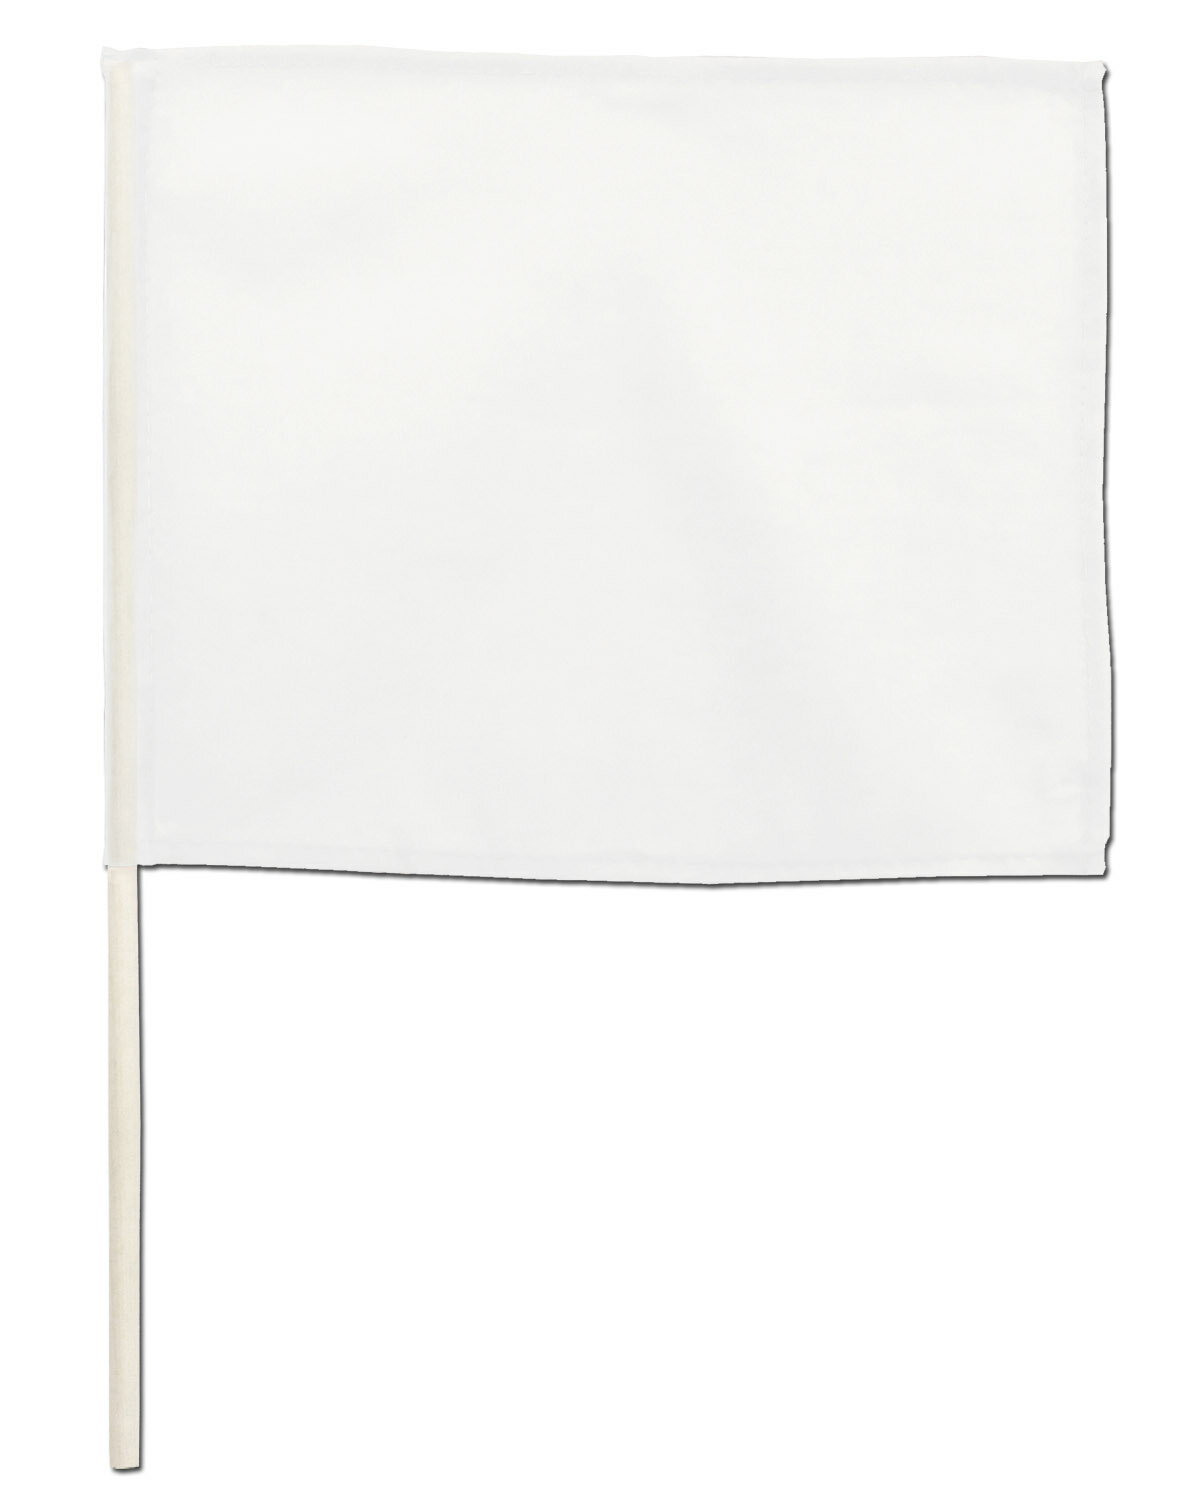 無地色旗 カラフルミニフラッグ 白(4196） 20.5×25cm 棒付き ポリエステル製 運動会